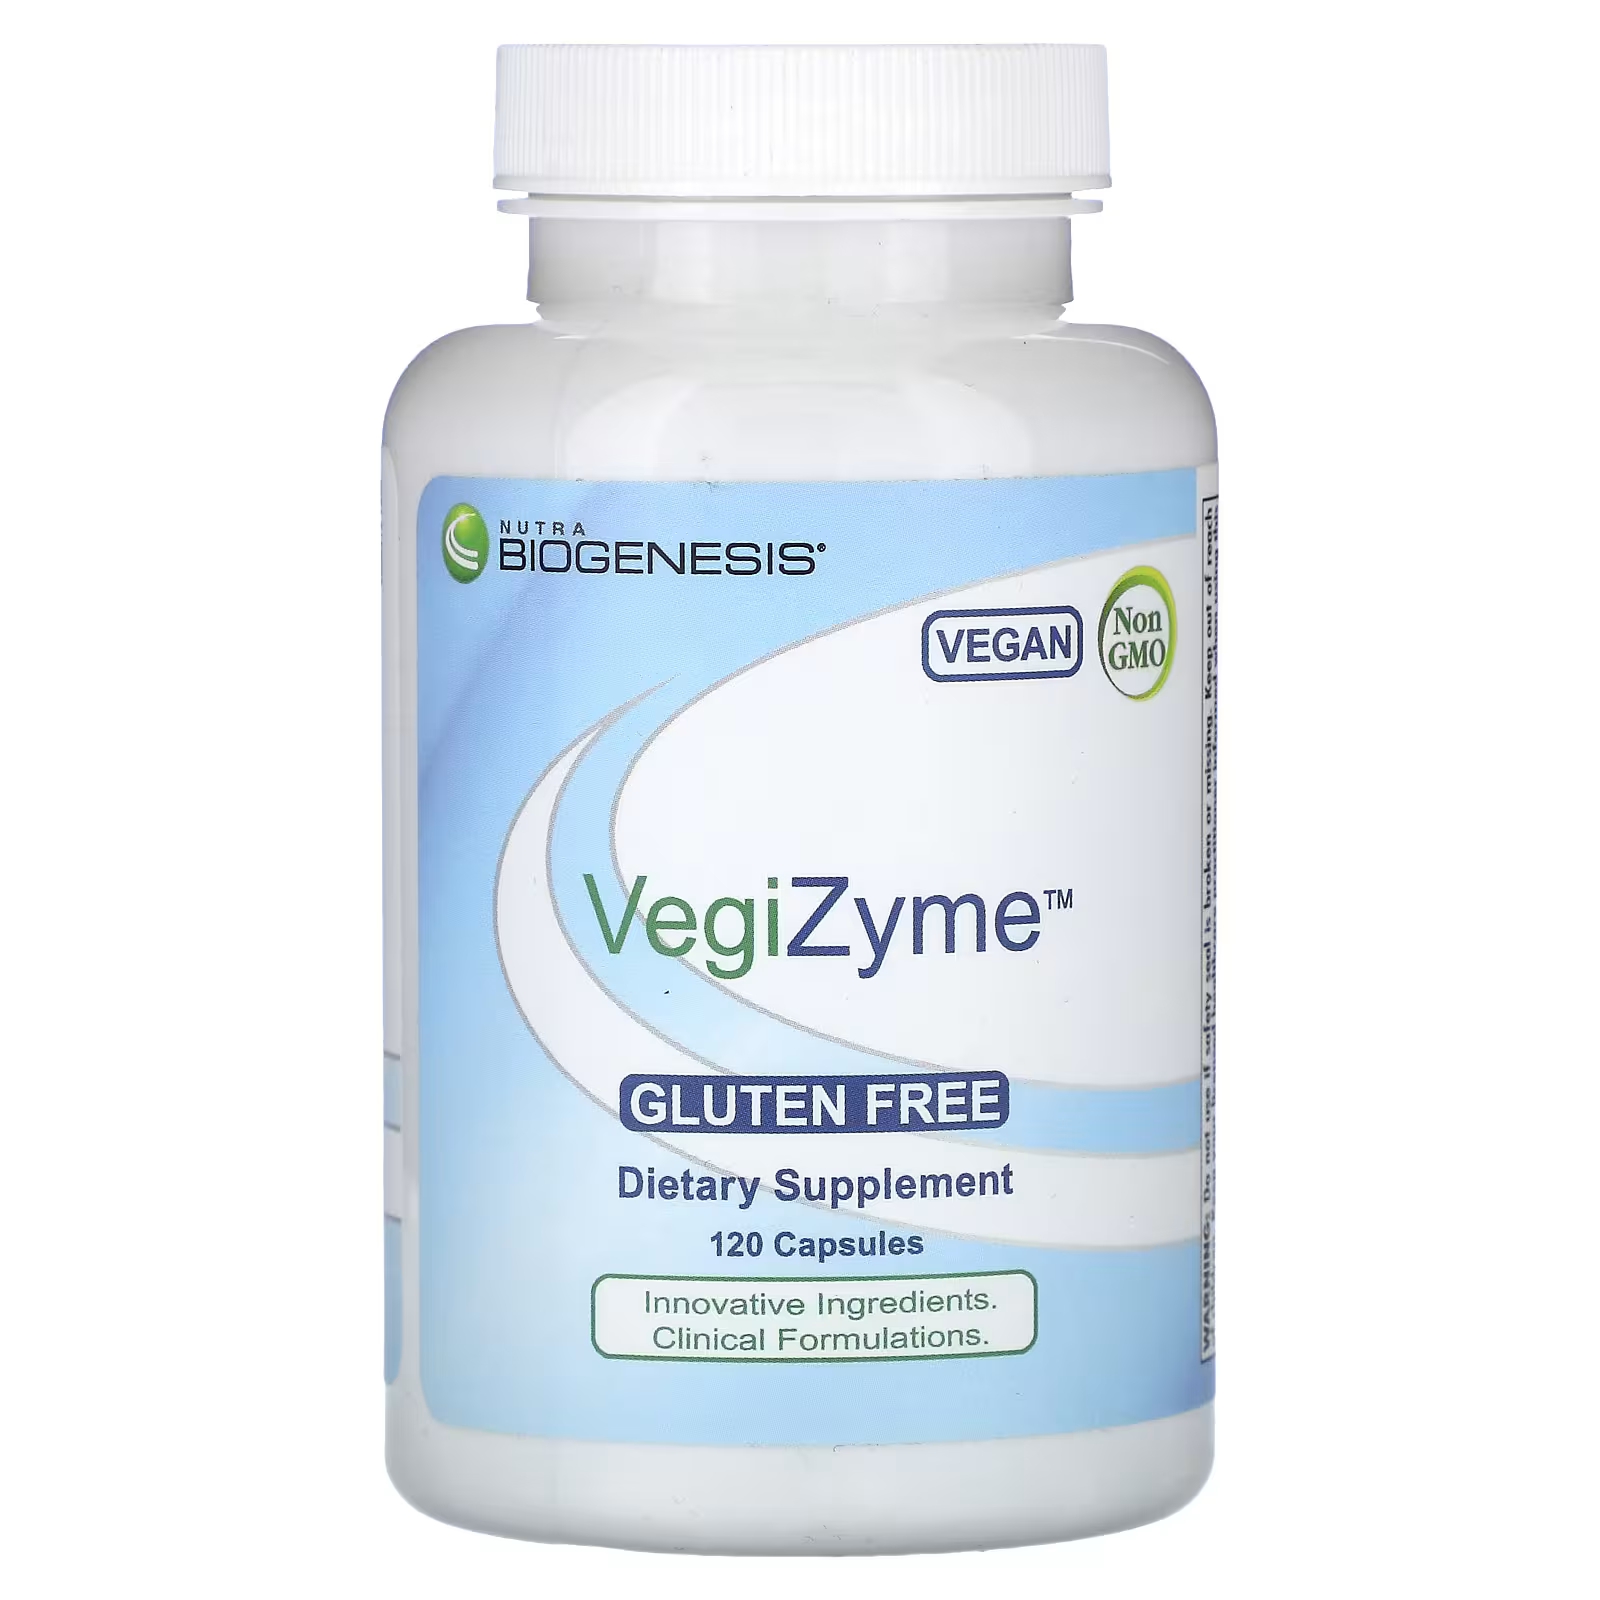 Пищевая добавка Nutra BioGenesis VegiZyme, 120 капсул codeage полифенолы широкого спектра антиоксидант веганский растительного происхождения 120 капсул